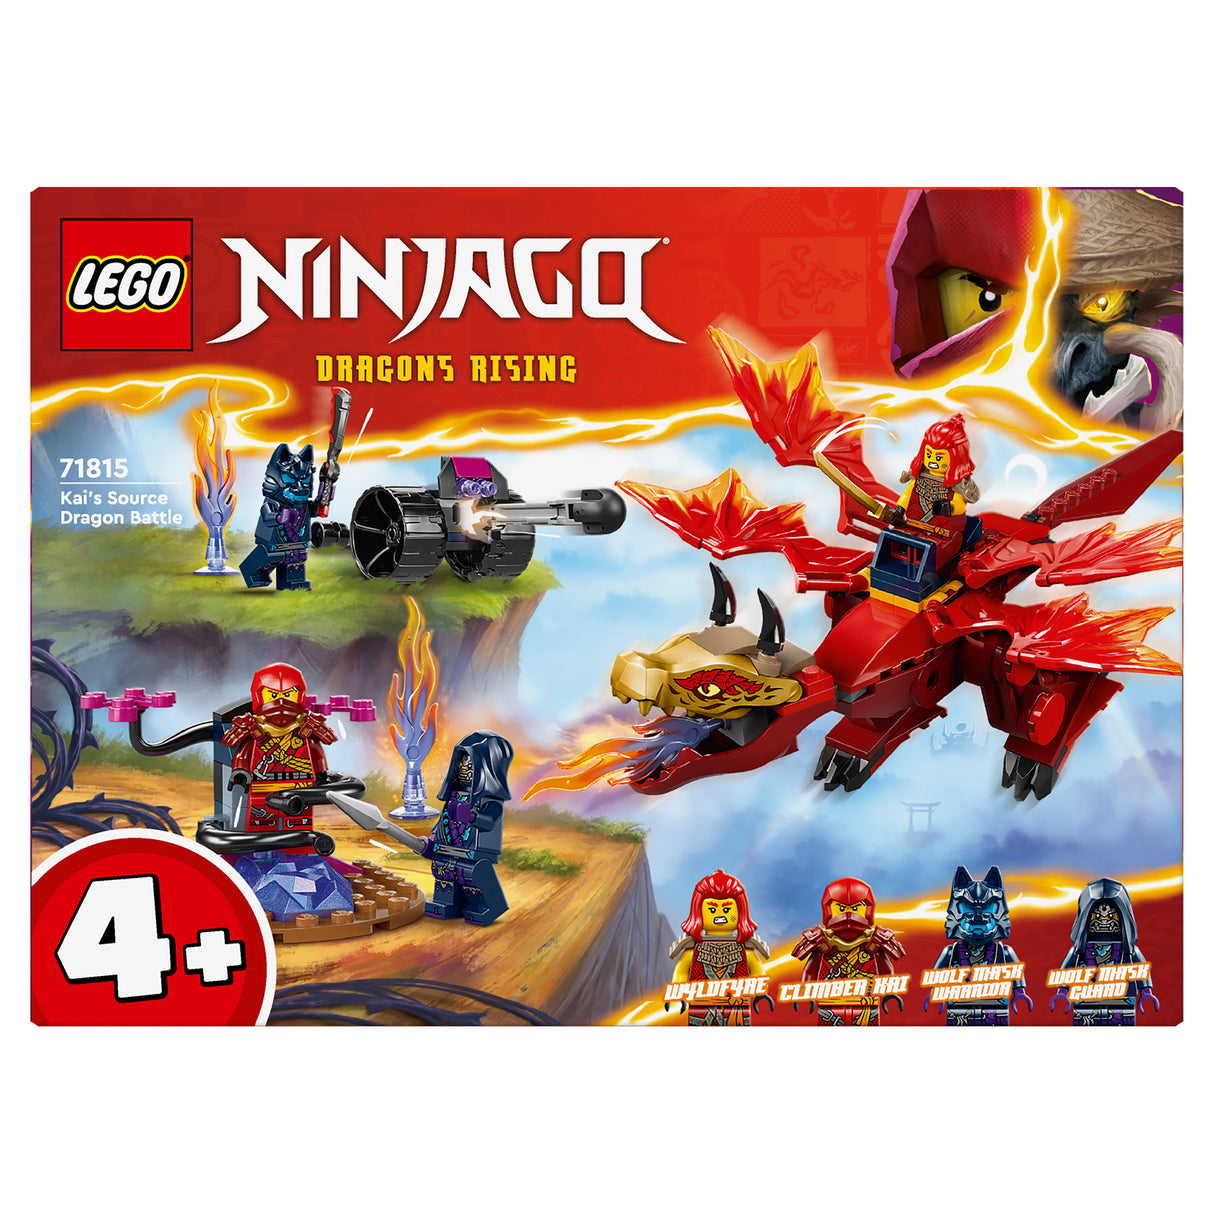 LEGO Ninjago Kai'S Source Dragon Battle 71815, (120-Pieces)